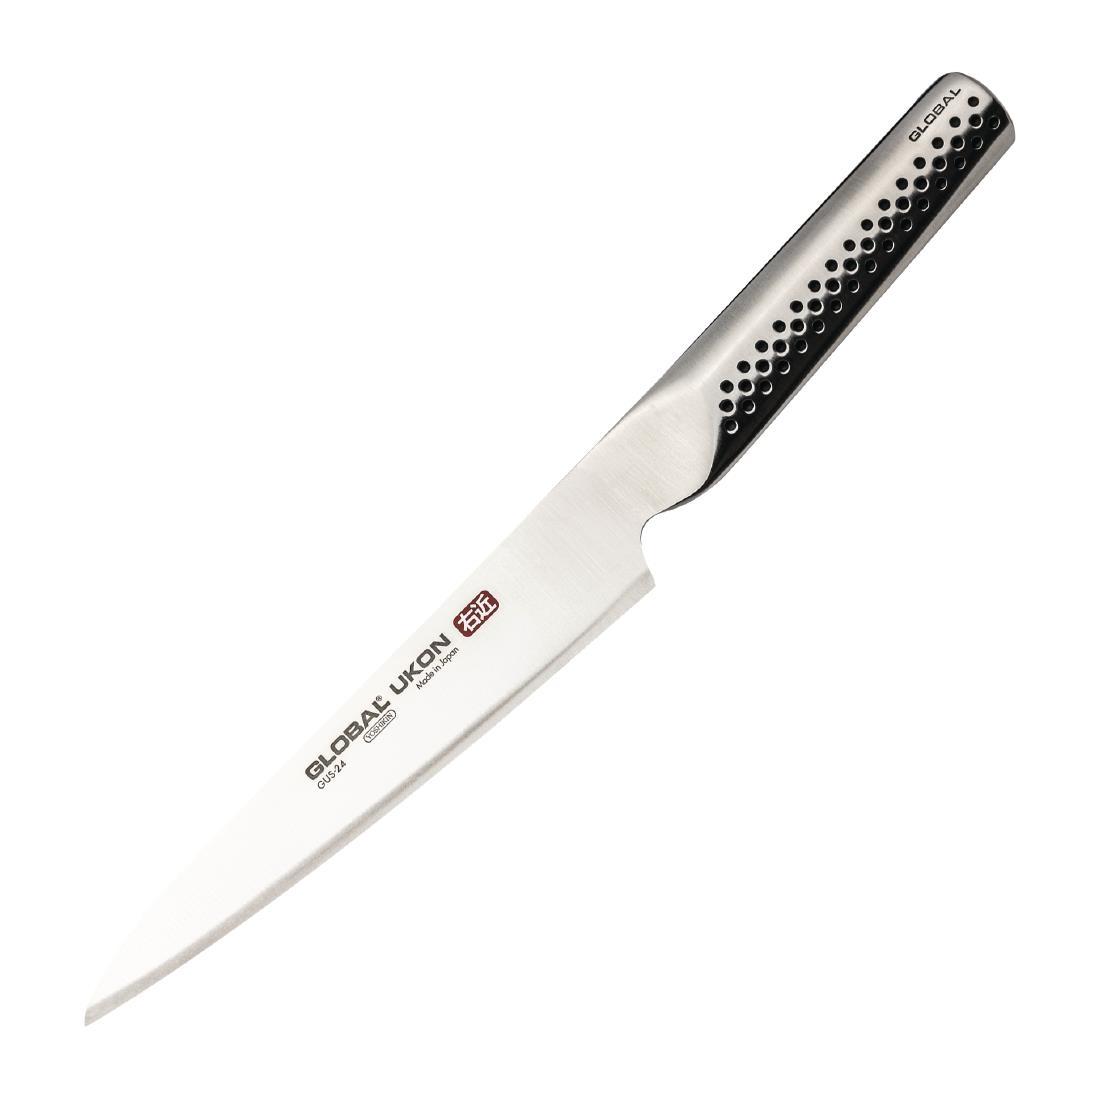 Global Knives Ukon Range Utility Knife 15cm - FX057  - 1